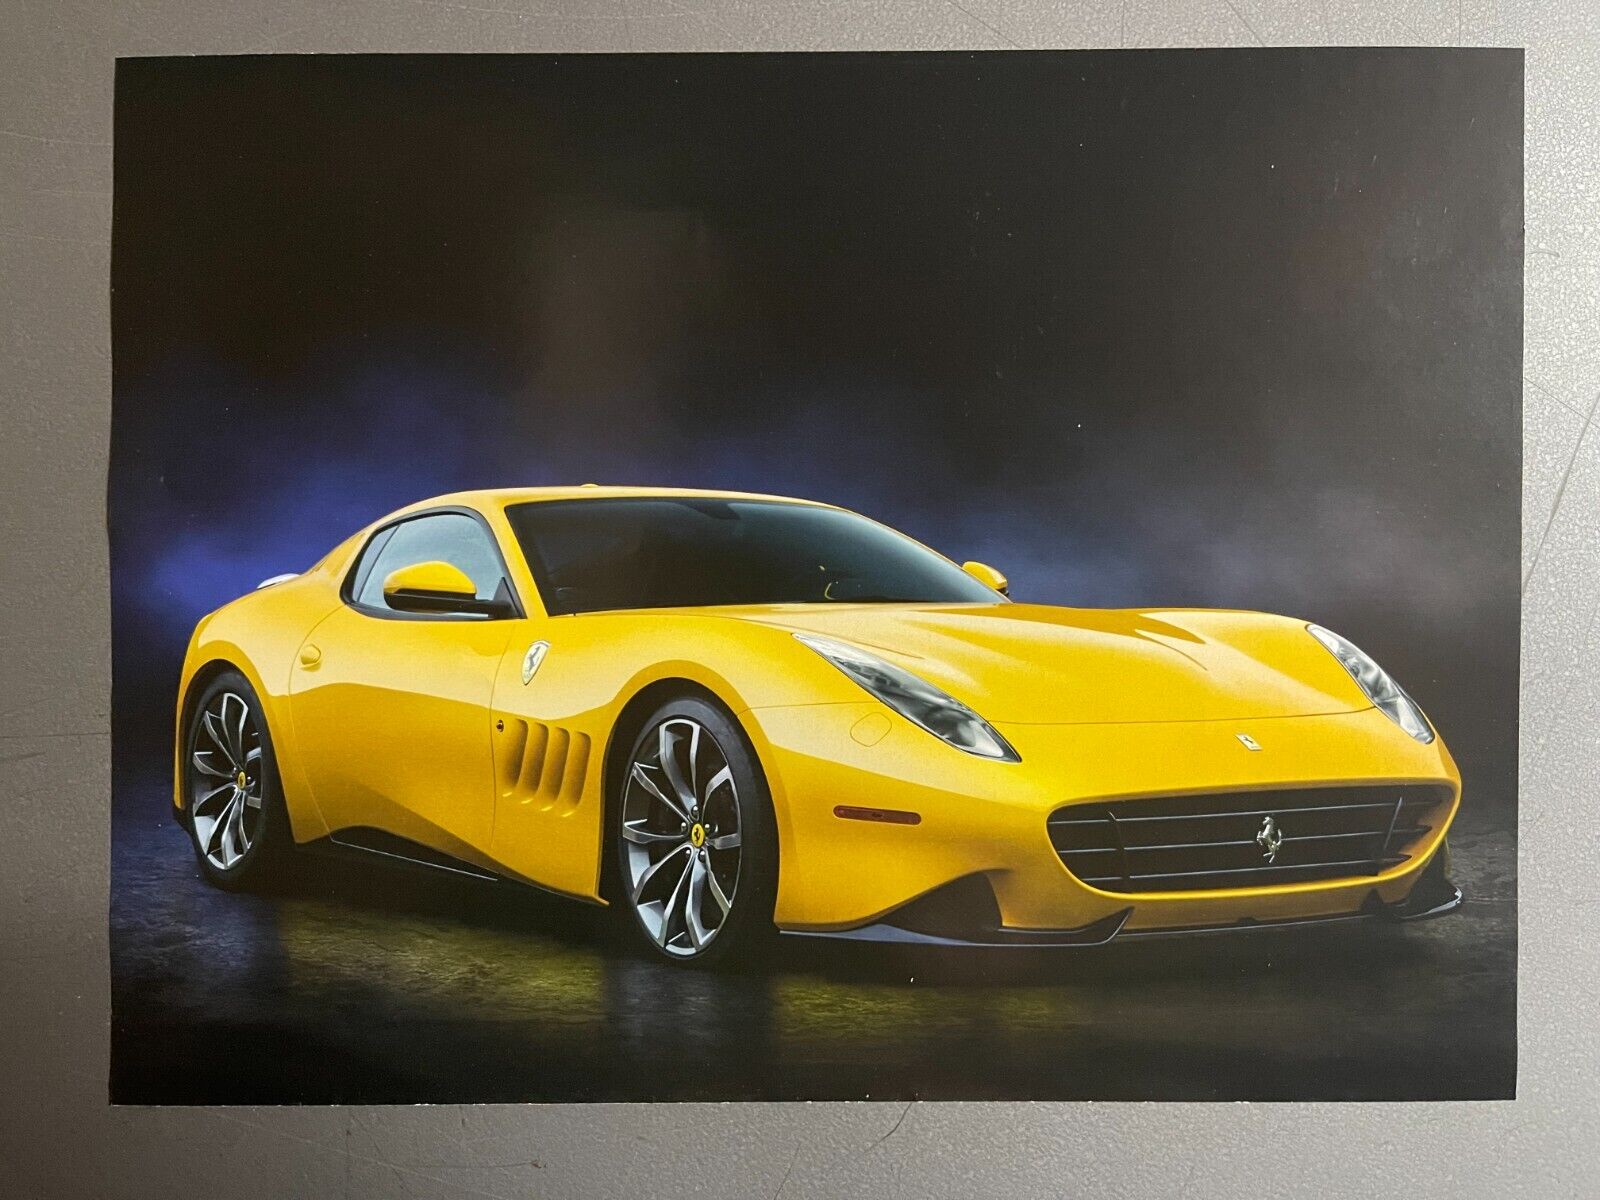 Ferrari Sp 275 Rw Competizione Wallpapers